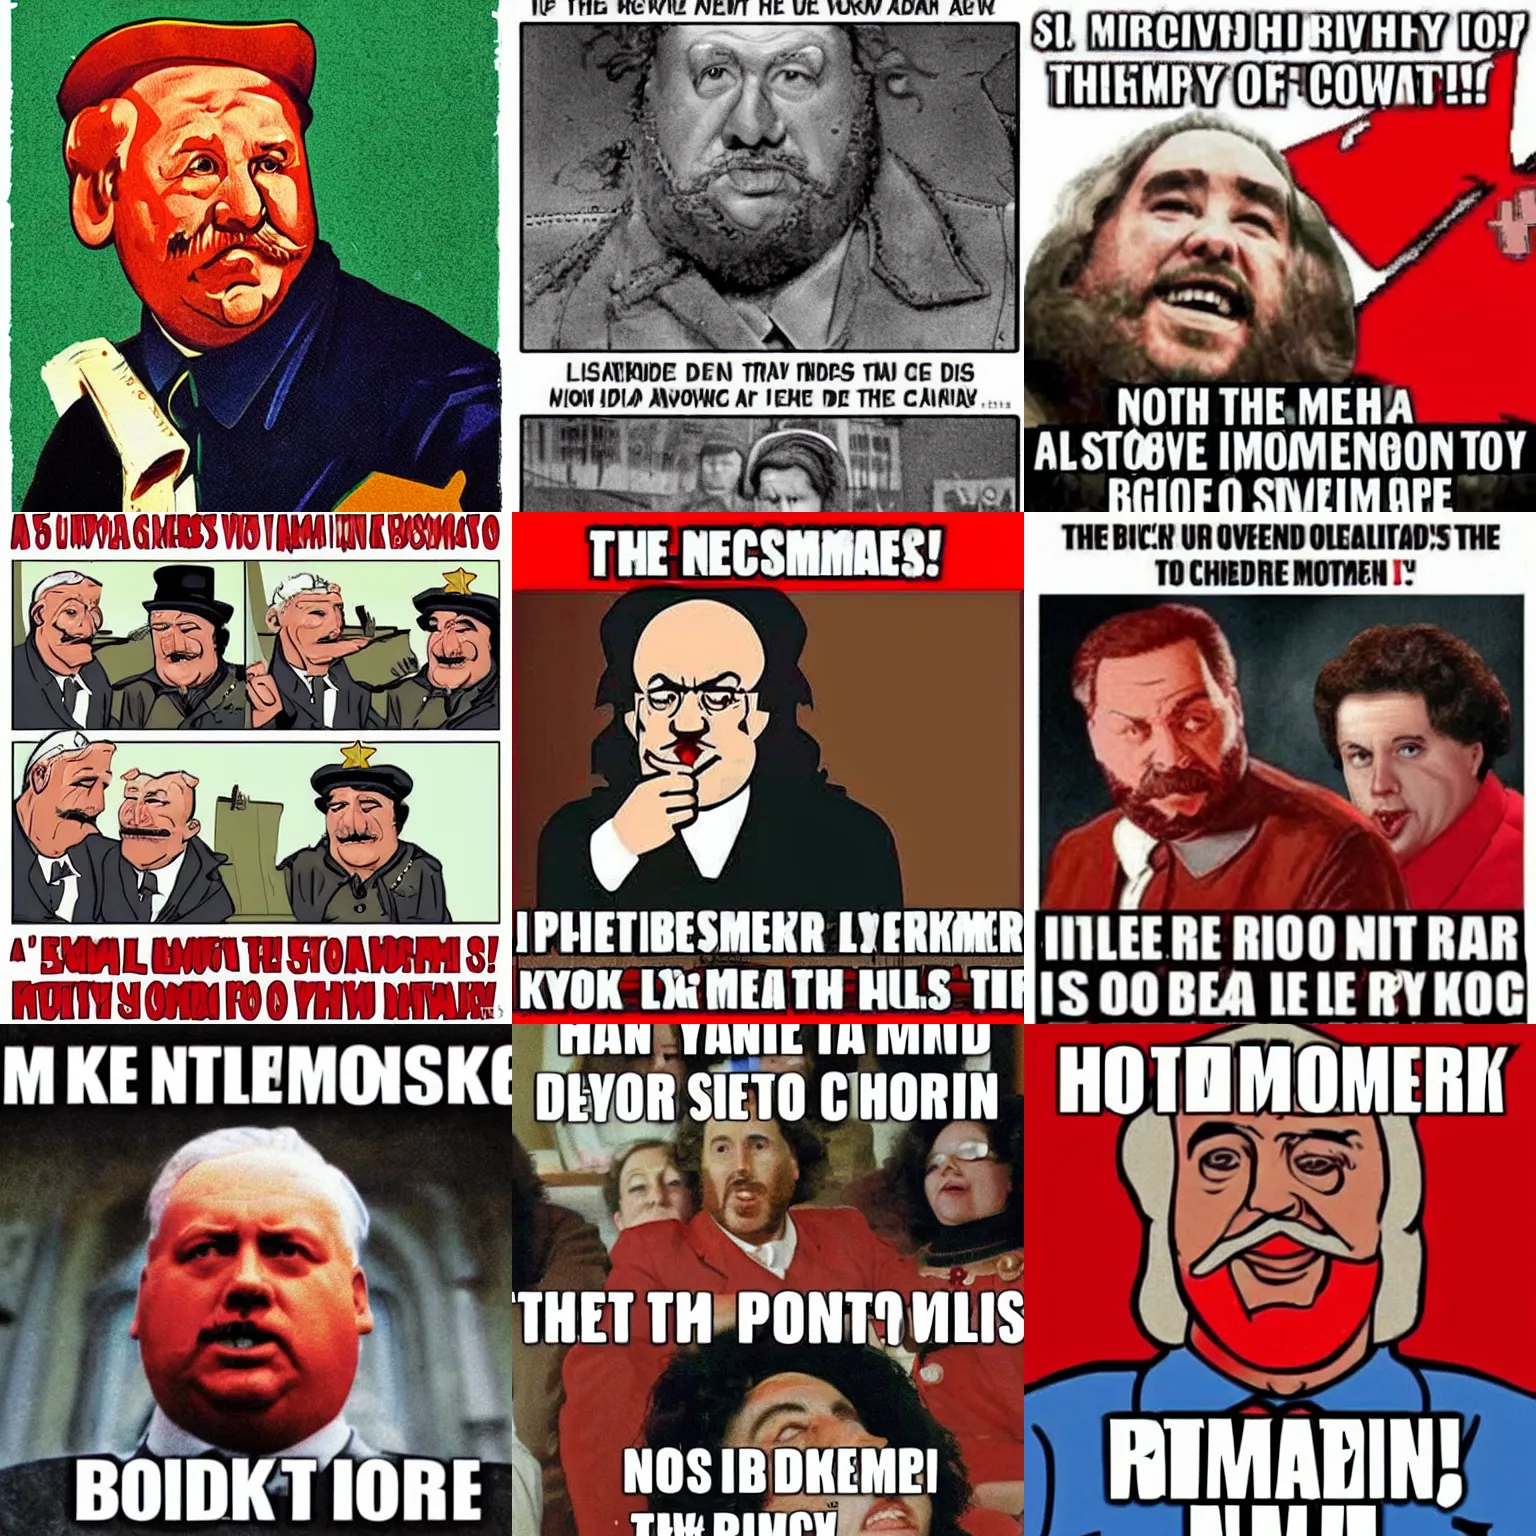 Prompt: a hilarious communist meme